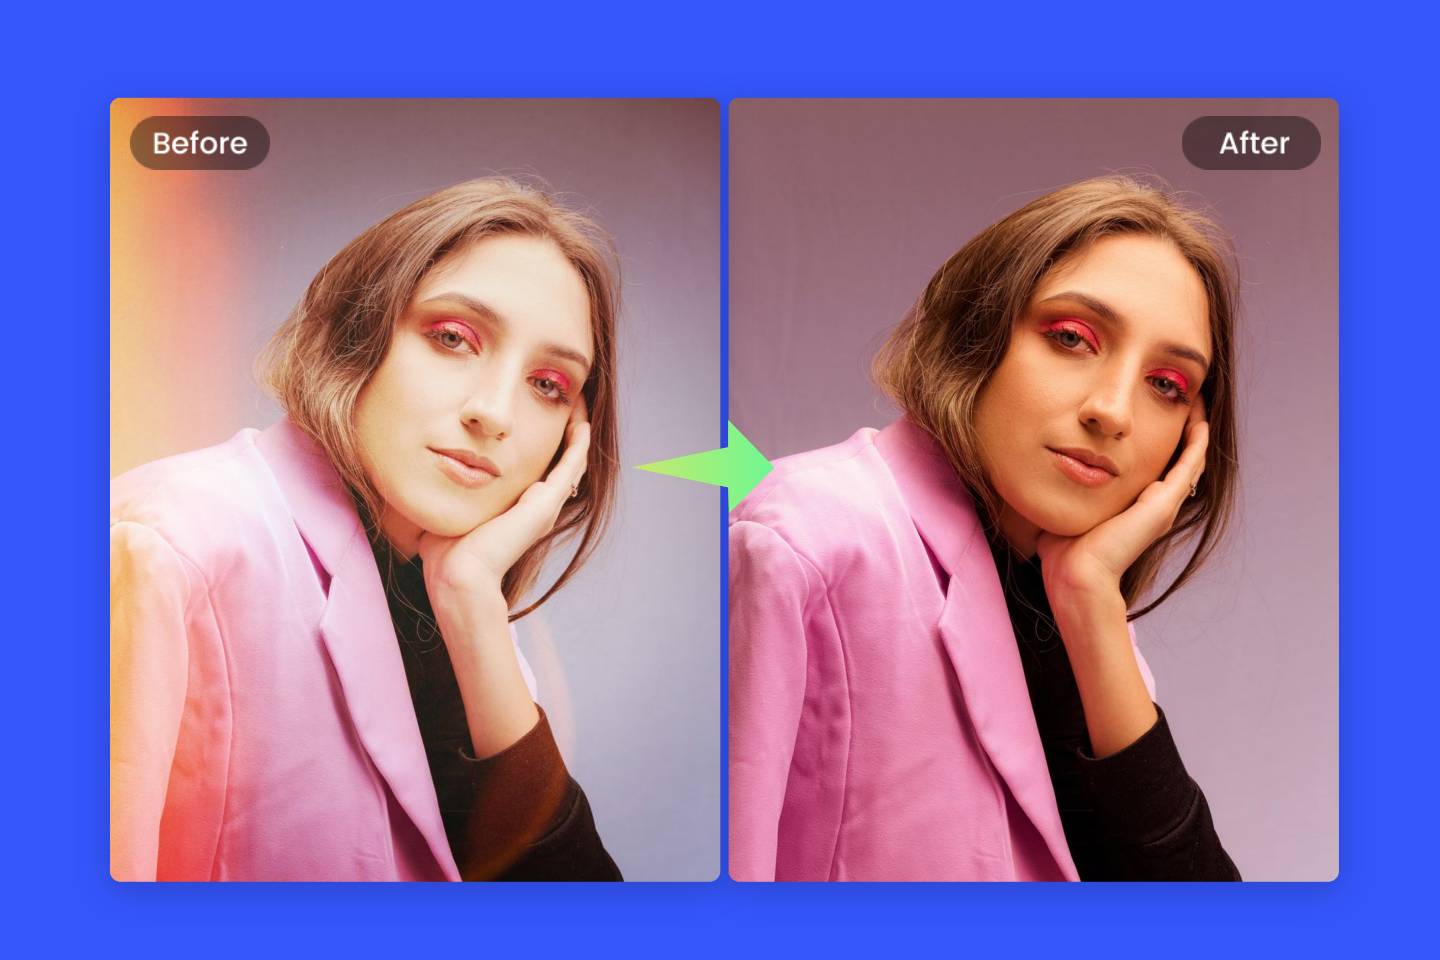 Odstraňte nežádoucí filtr z ženského obrazu pomocí odstraňovače filtru Fotoru